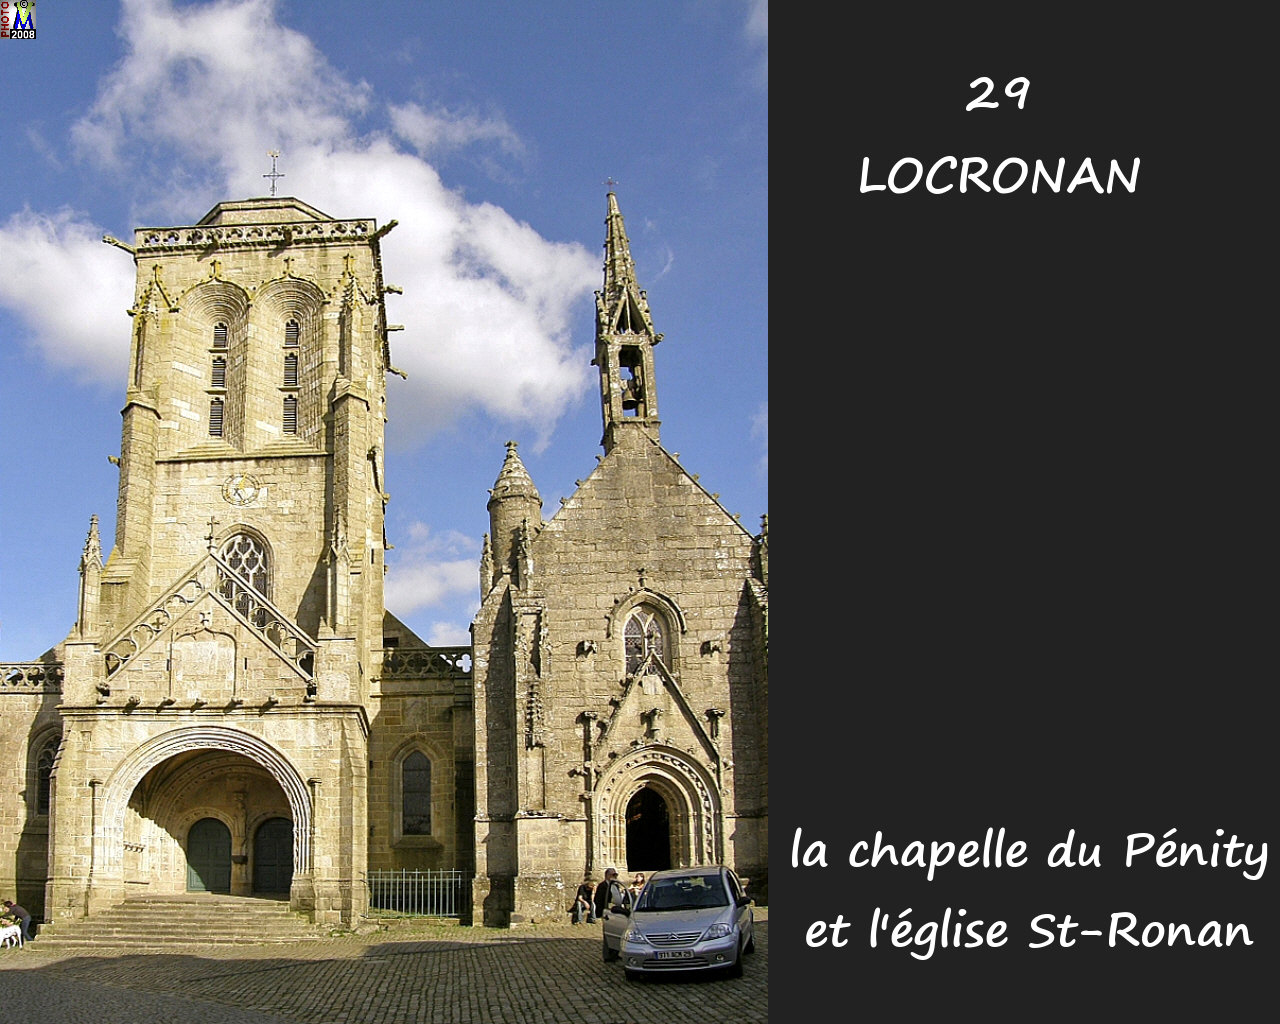 29LOCRONAN_chapelle_104.jpg